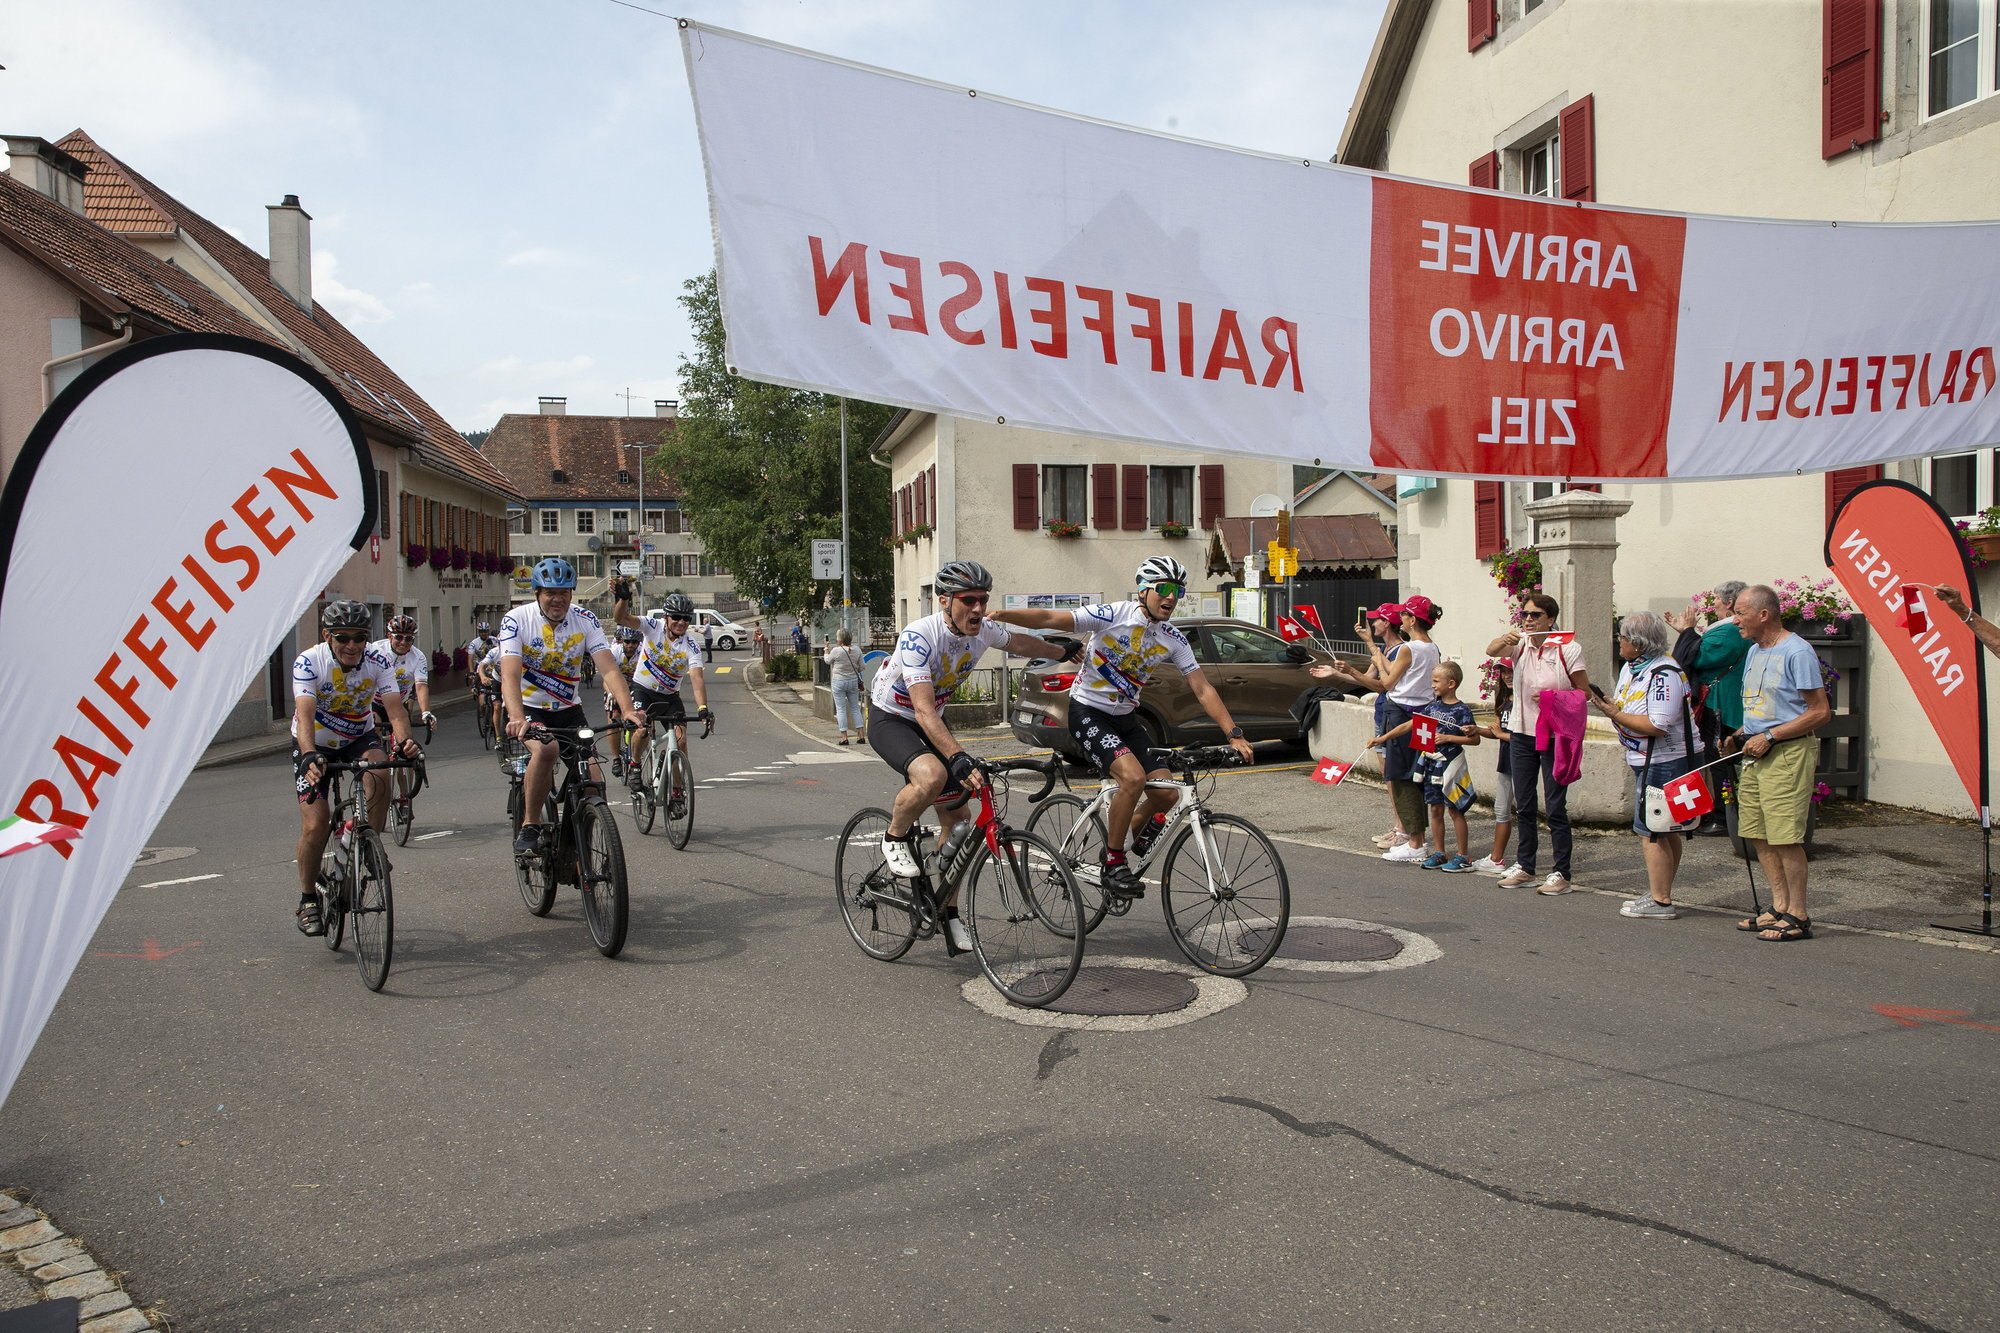 Ils sont arrivés! Les cinquante cyclistes ont accompli leur défi climato-sportif et caritatif en reliant en cinq jours Grono, commune la plus chaude de Suisse, à La Brévine, notre Sibérie officielle.